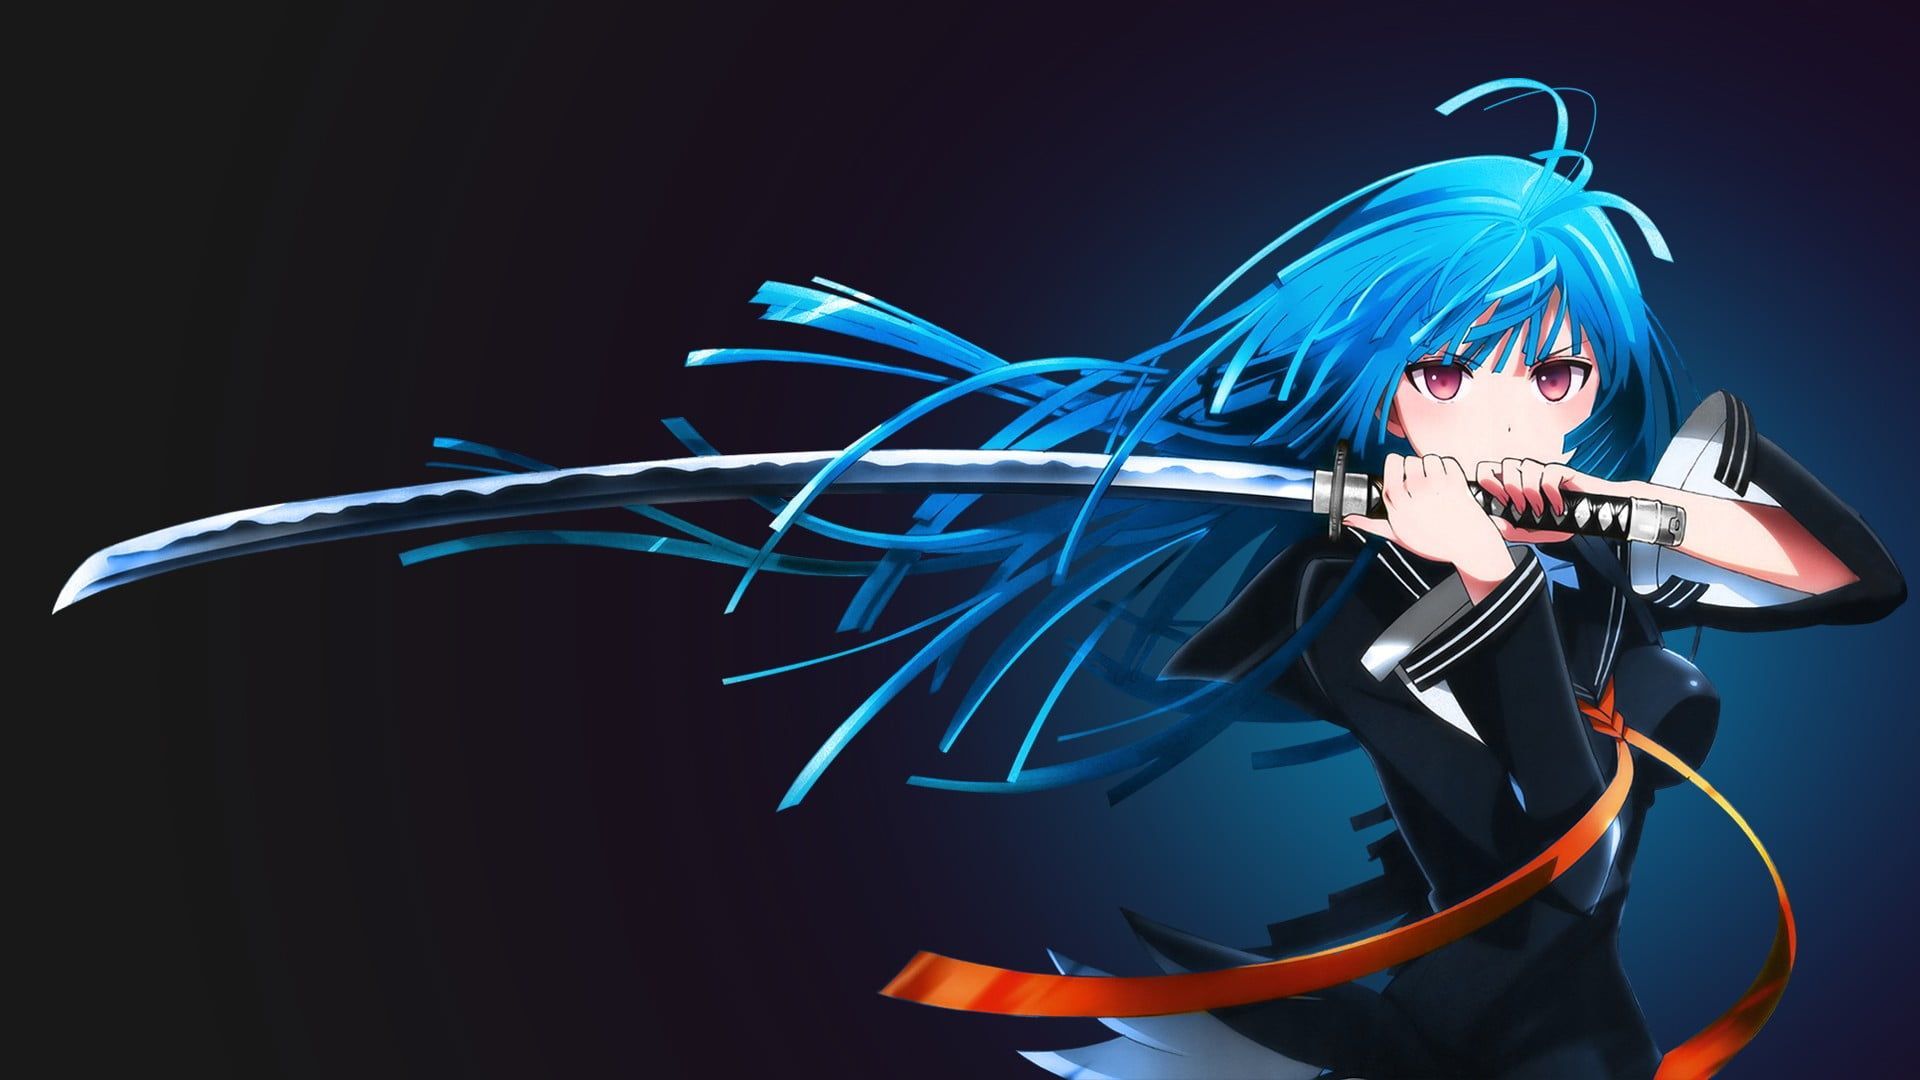 Blue Haired Female Anime Character #katana Kisara Tendo Black Bullet Anime Girls #anime #sword Blue Hai. HD Anime Wallpaper, Anime Background Wallpaper, Anime